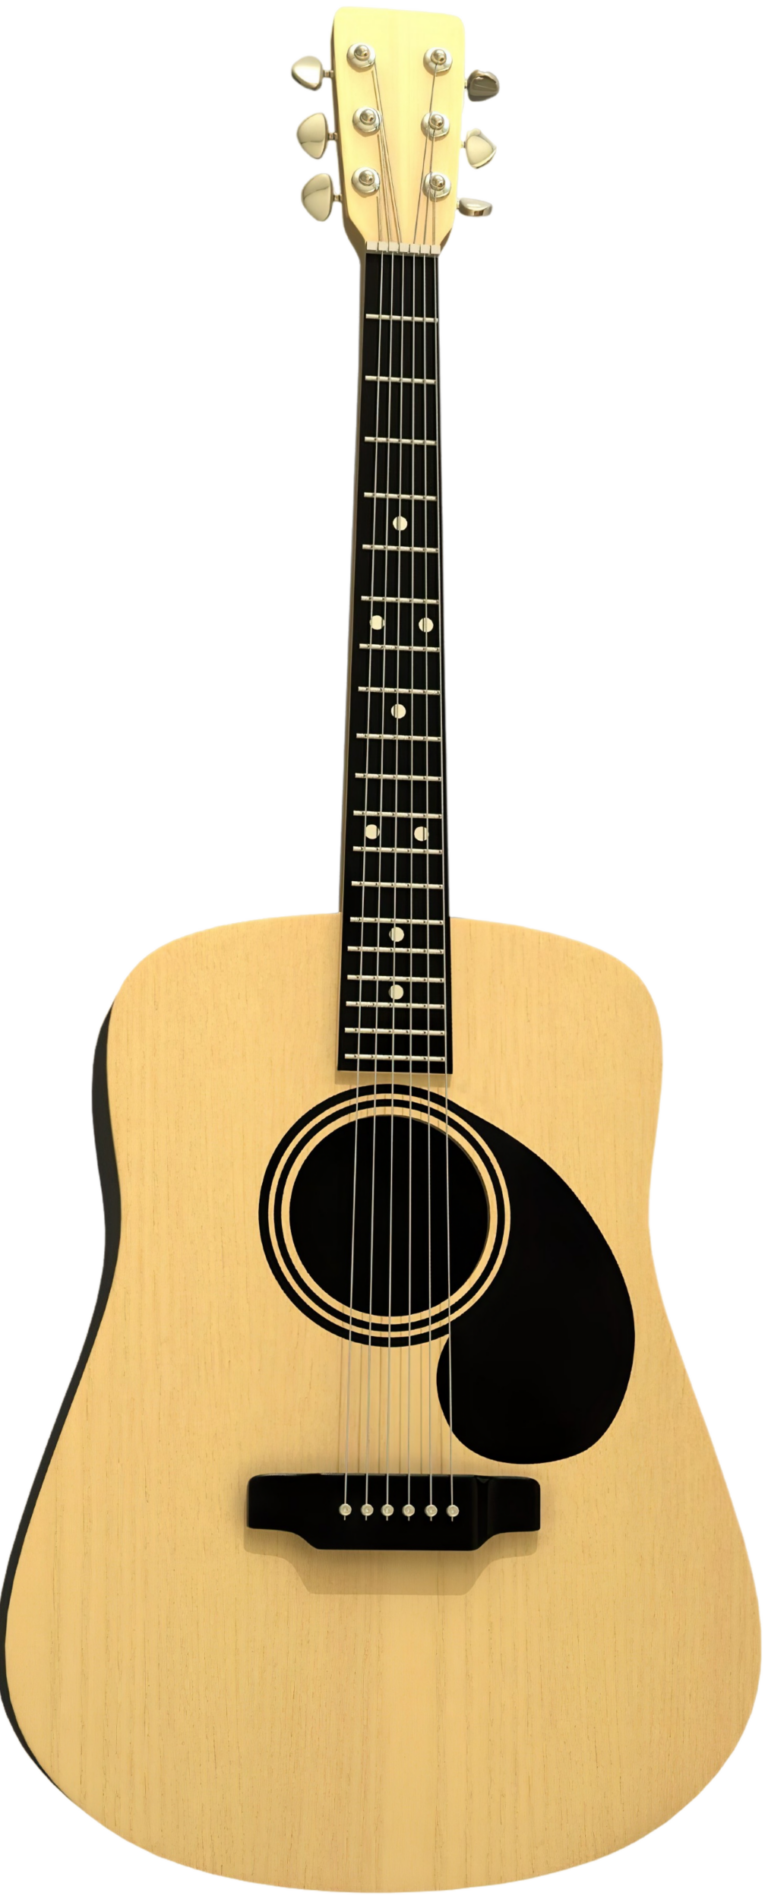 caplan 2 acoustic guitar